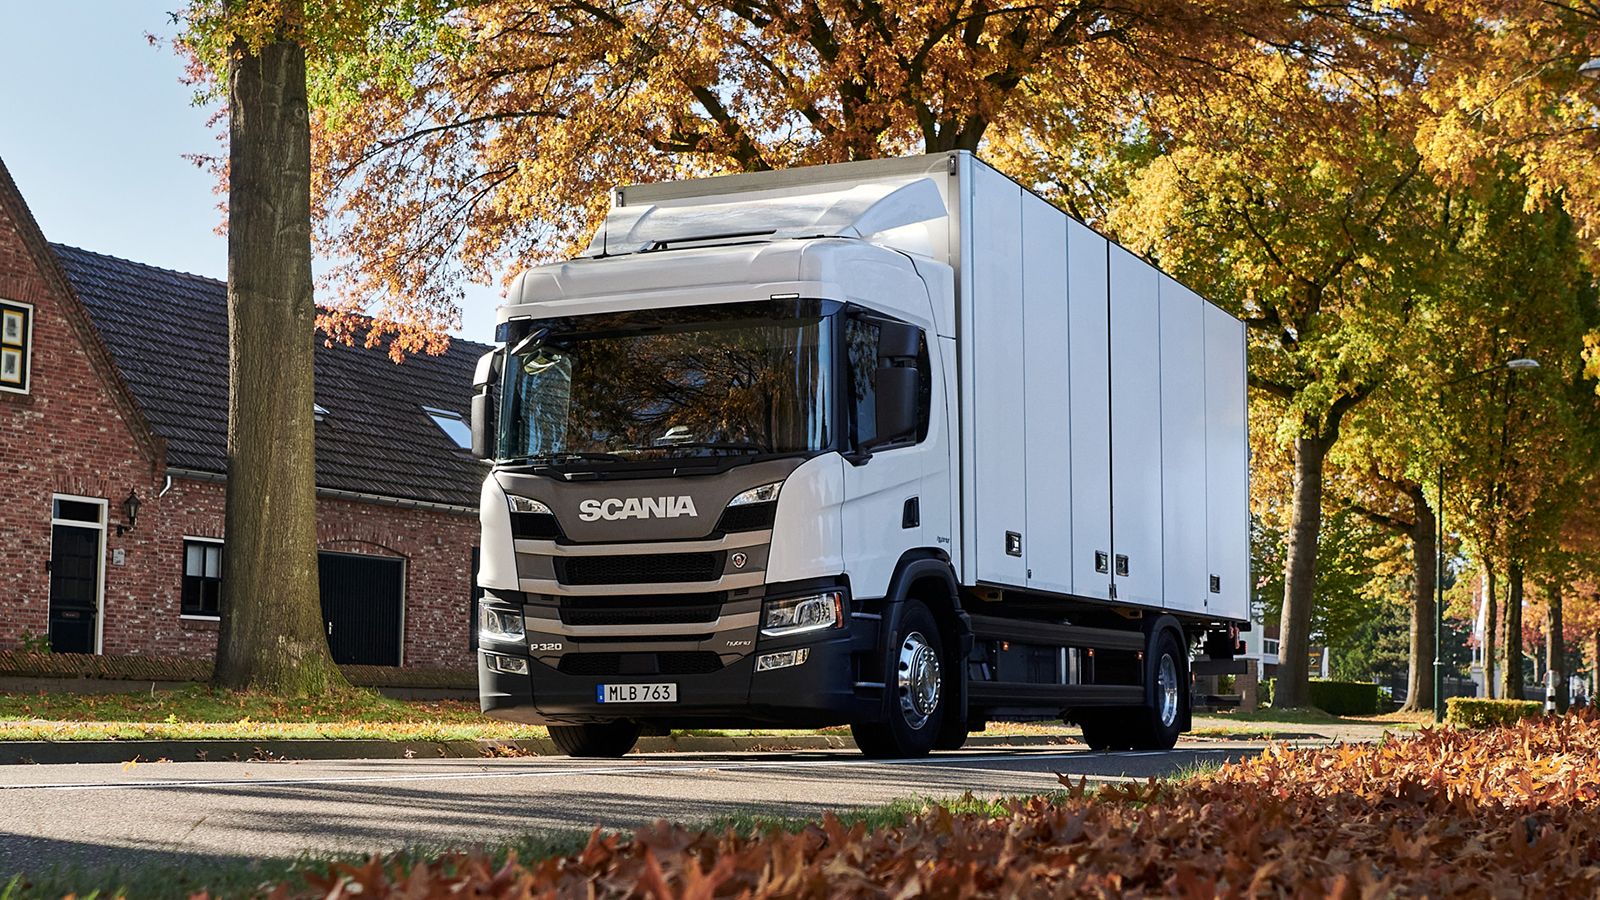 Το υβριδικό Scania διαθέτει υψηλότερο ωφέλιμο φορτίο κατά 250 κιλά σε σύγκριση με το ντίζελ, χάρη στον έναν τόνο που του «χαρίζει» η Ε.Ε. ως επιβράβευση.